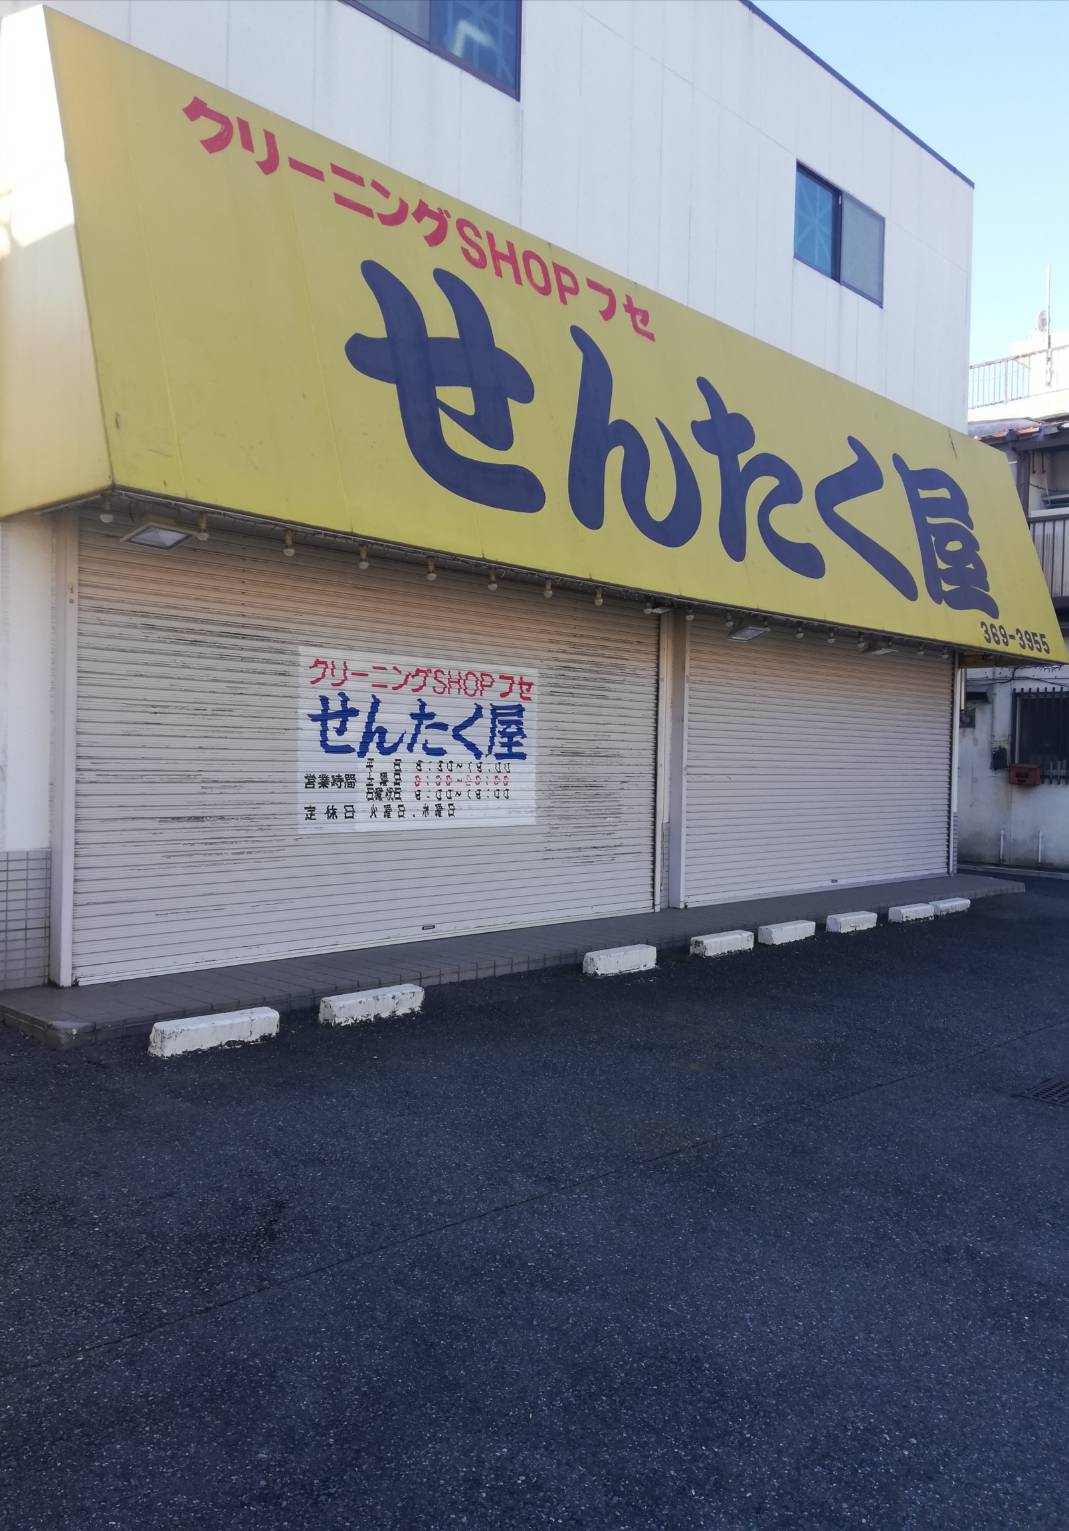 クリーニングのせんたく屋 松戸新田 は12月21日で閉店 現地状況 21日までお渡しを実施 松戸ロード 松戸の地域情報